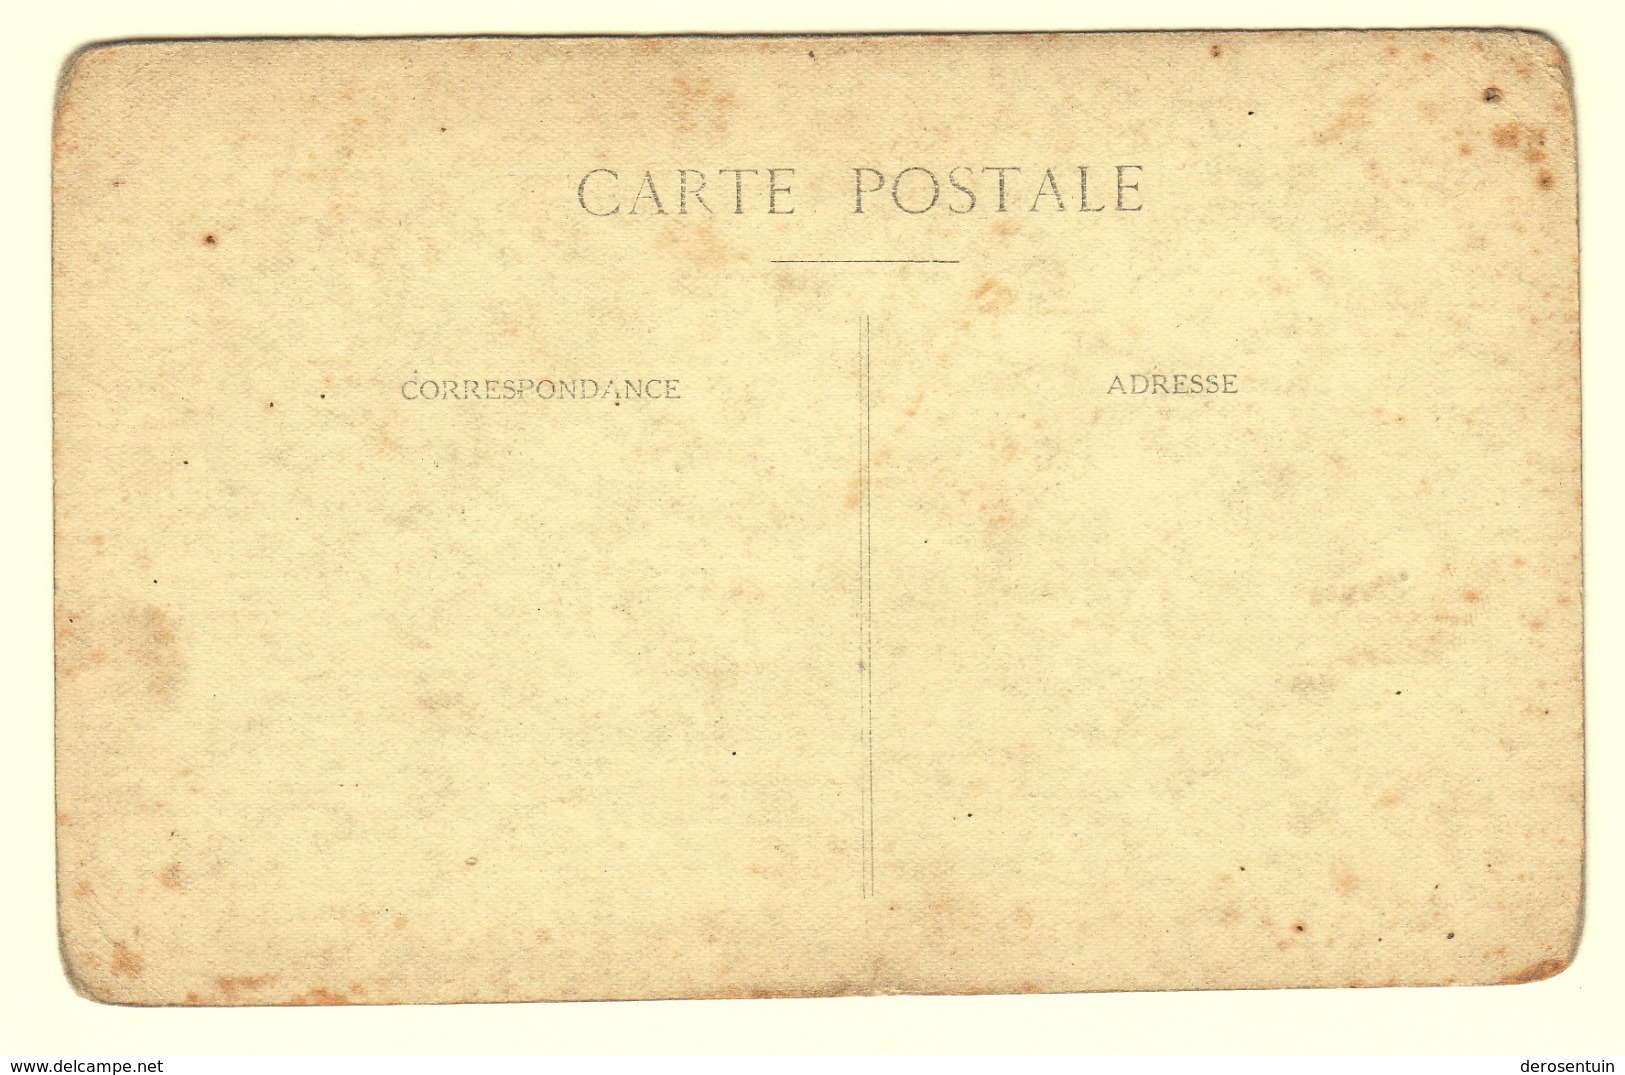 #21591	[Postkaarten] Lot van 30 (hoofdzakelijk) fotokaarten etc. (militairen, baby, personen, naakt, antiek ...)